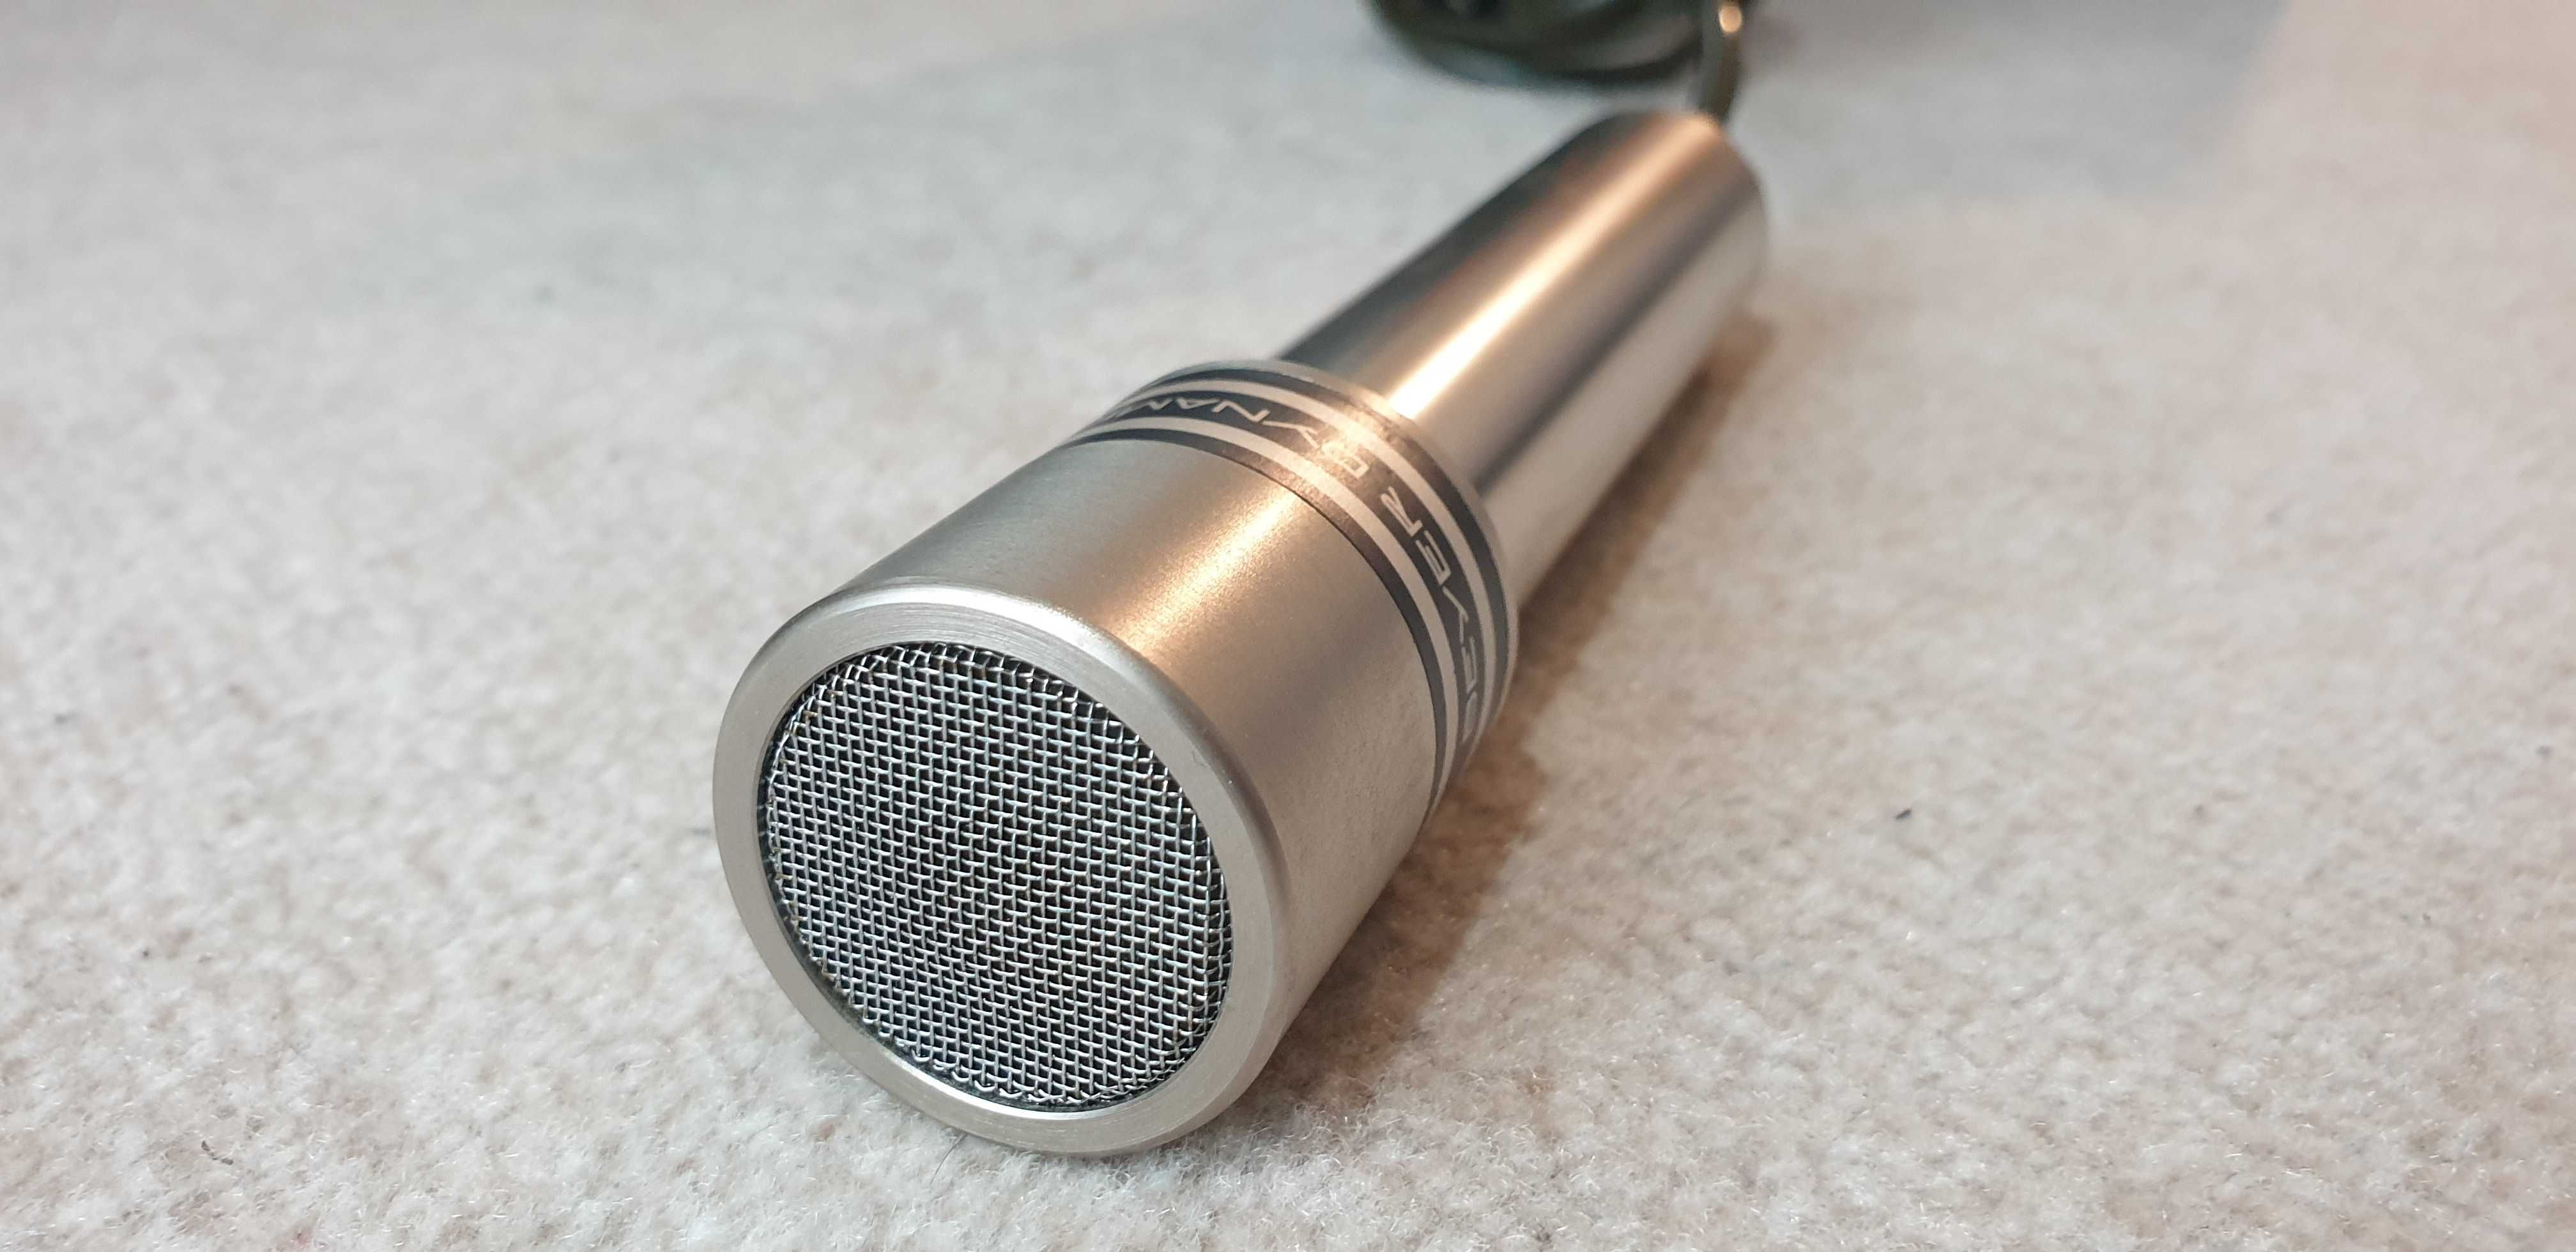 Beyerdynamic M 550, Mikrofon Dynamiczny, 3 Din.